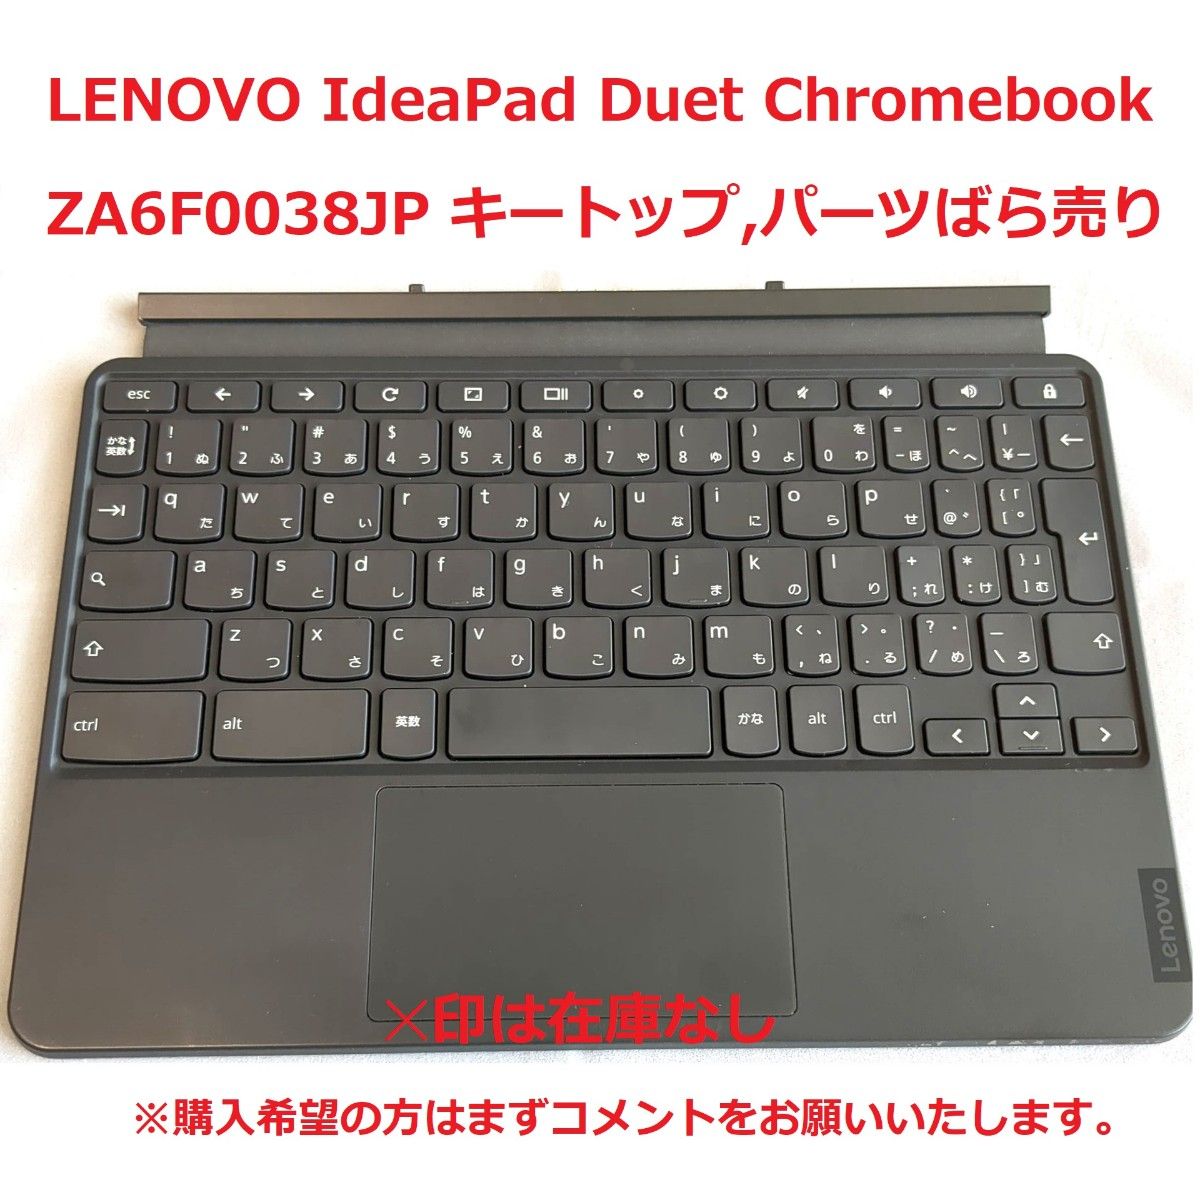 レノボジャパン Lenovo ZA6F0038JP Chromebook - タブレット